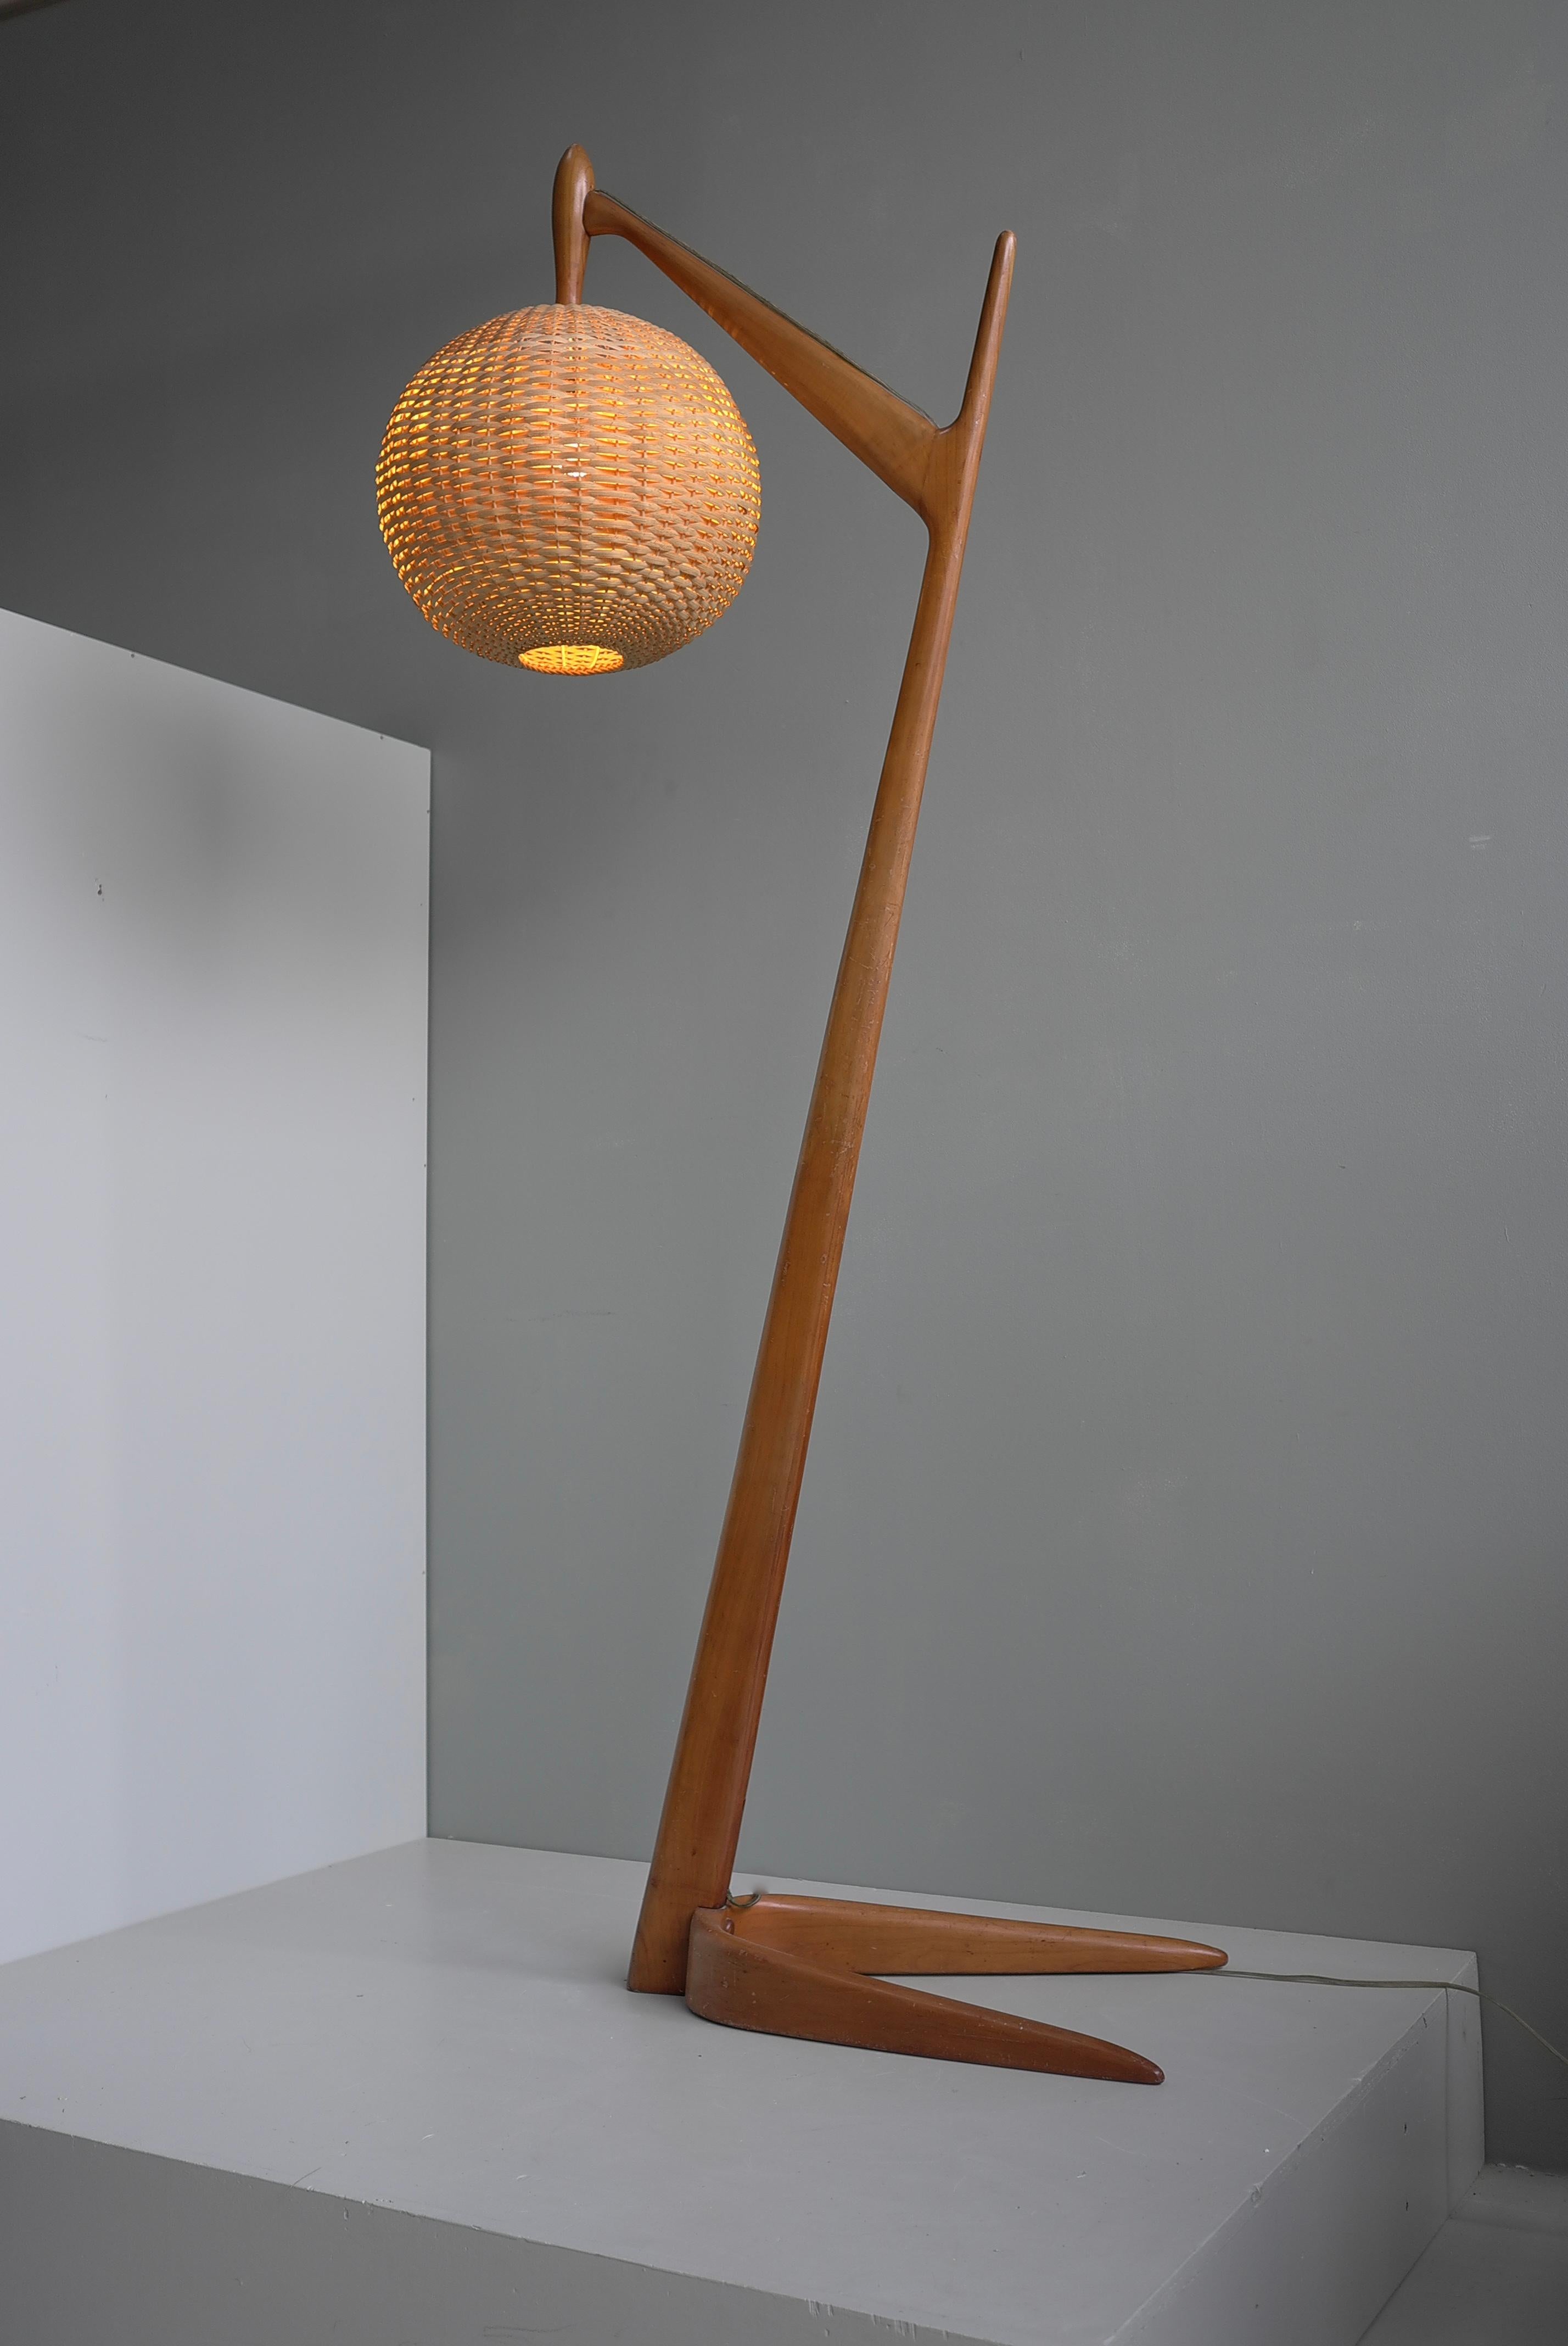 Grand lampadaire organique italien en bois de cèdre avec abat-jour en osier, vers 1955

Hauteur 185 cm, largeur 38 cm, profondeur 65 cm.